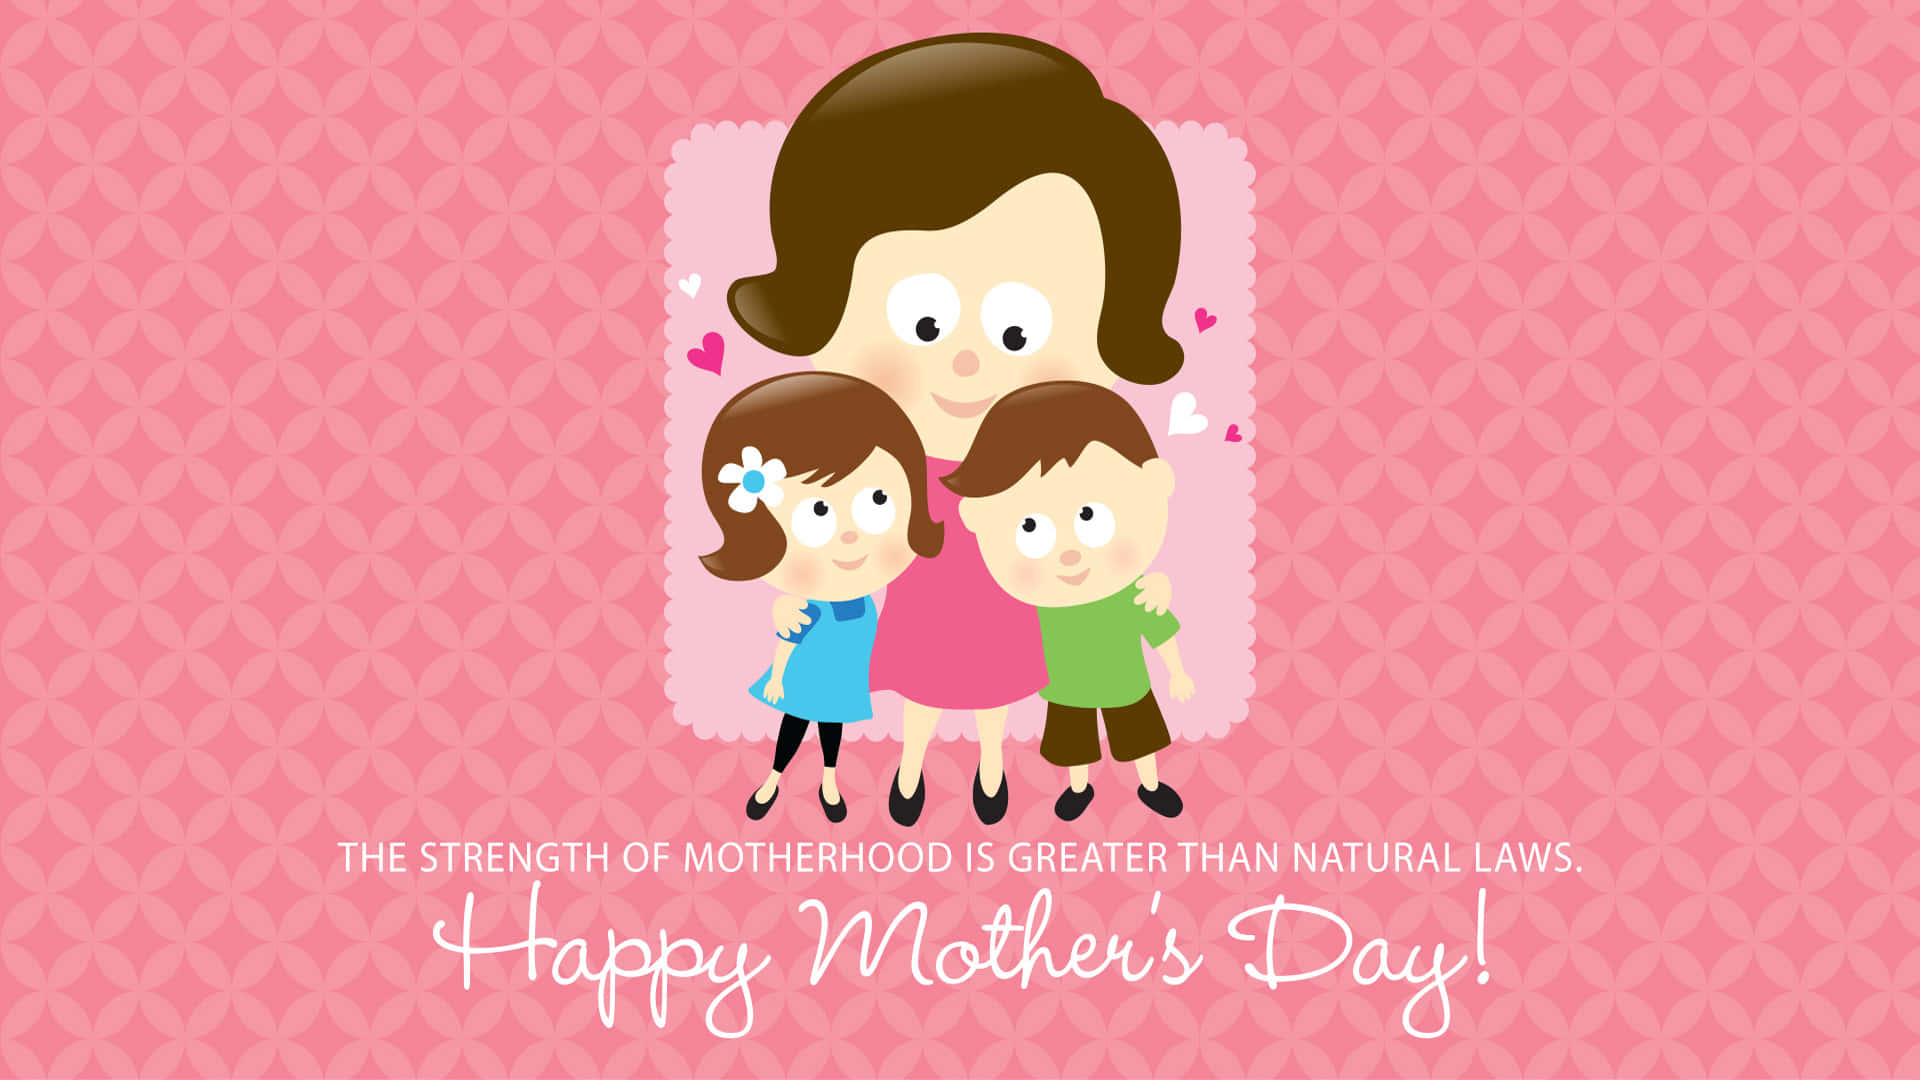 Celebreas Mães Incríveis Em Sua Vida Neste #felizdiadasmães. Papel de Parede